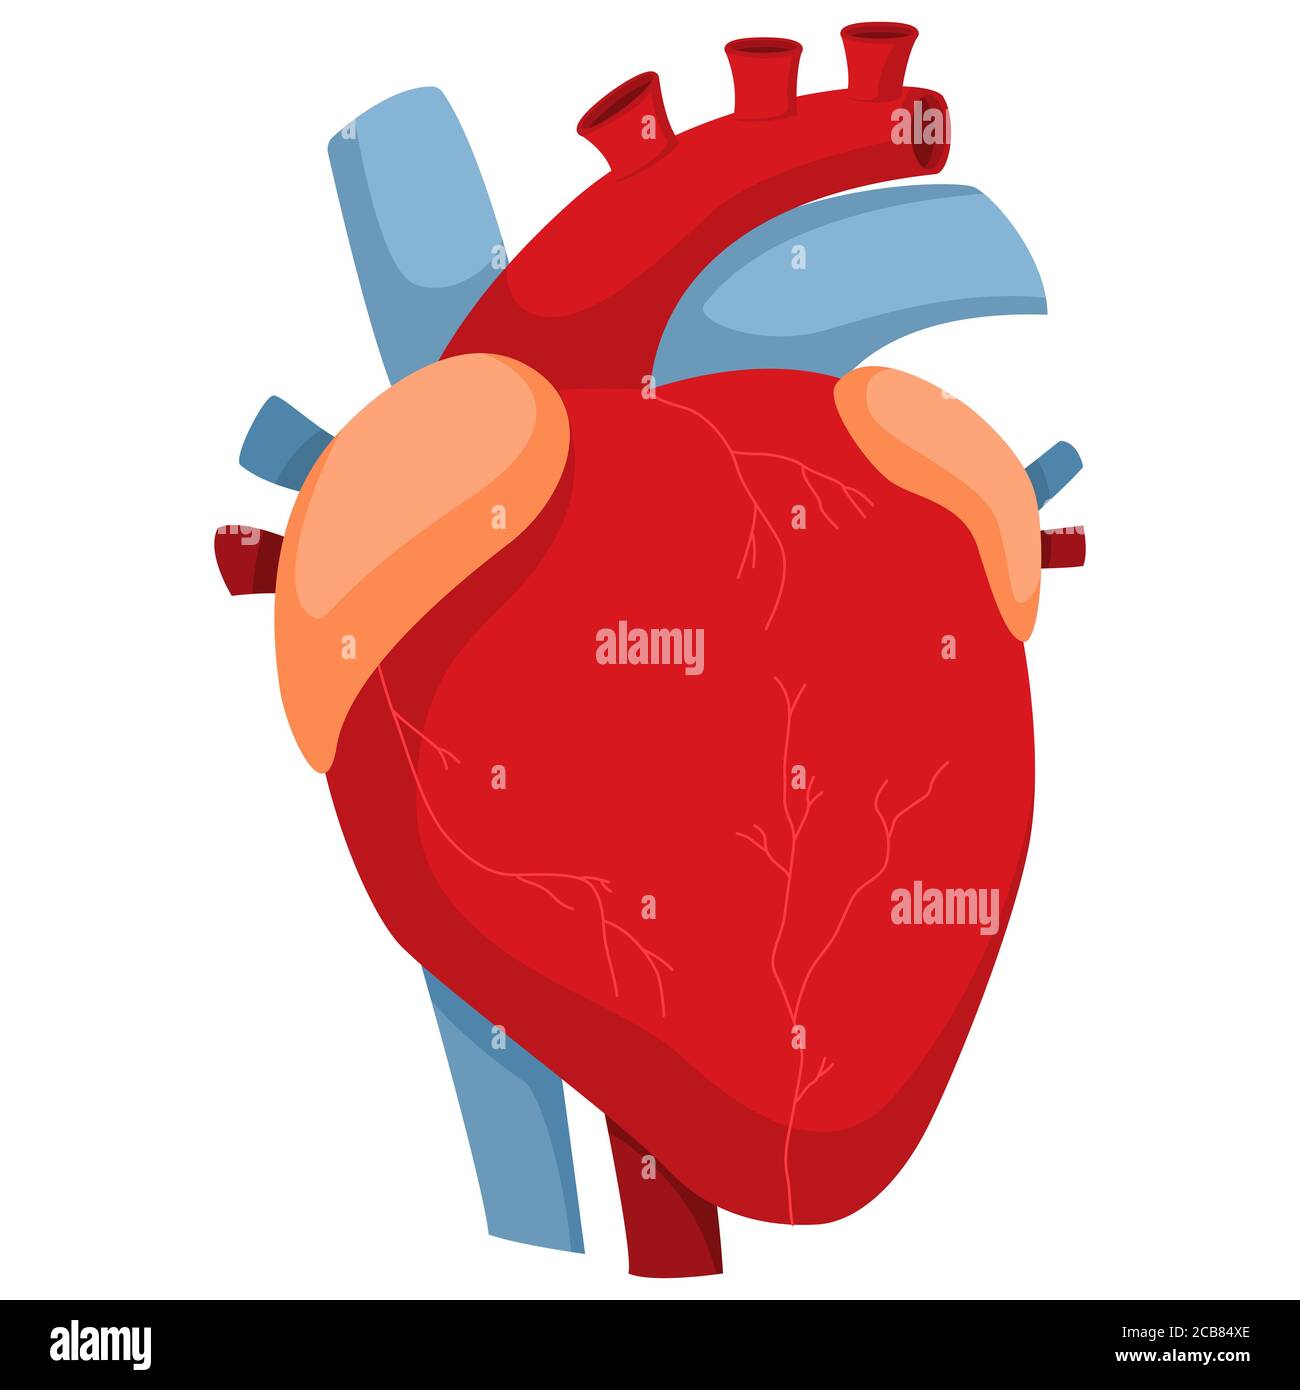 Cuore umano con arterie e valvole. Immagine vettoriale su cartoni animati dell'anatomia dell'organo interno isolato su sfondo bianco. Illustrazione Vettoriale